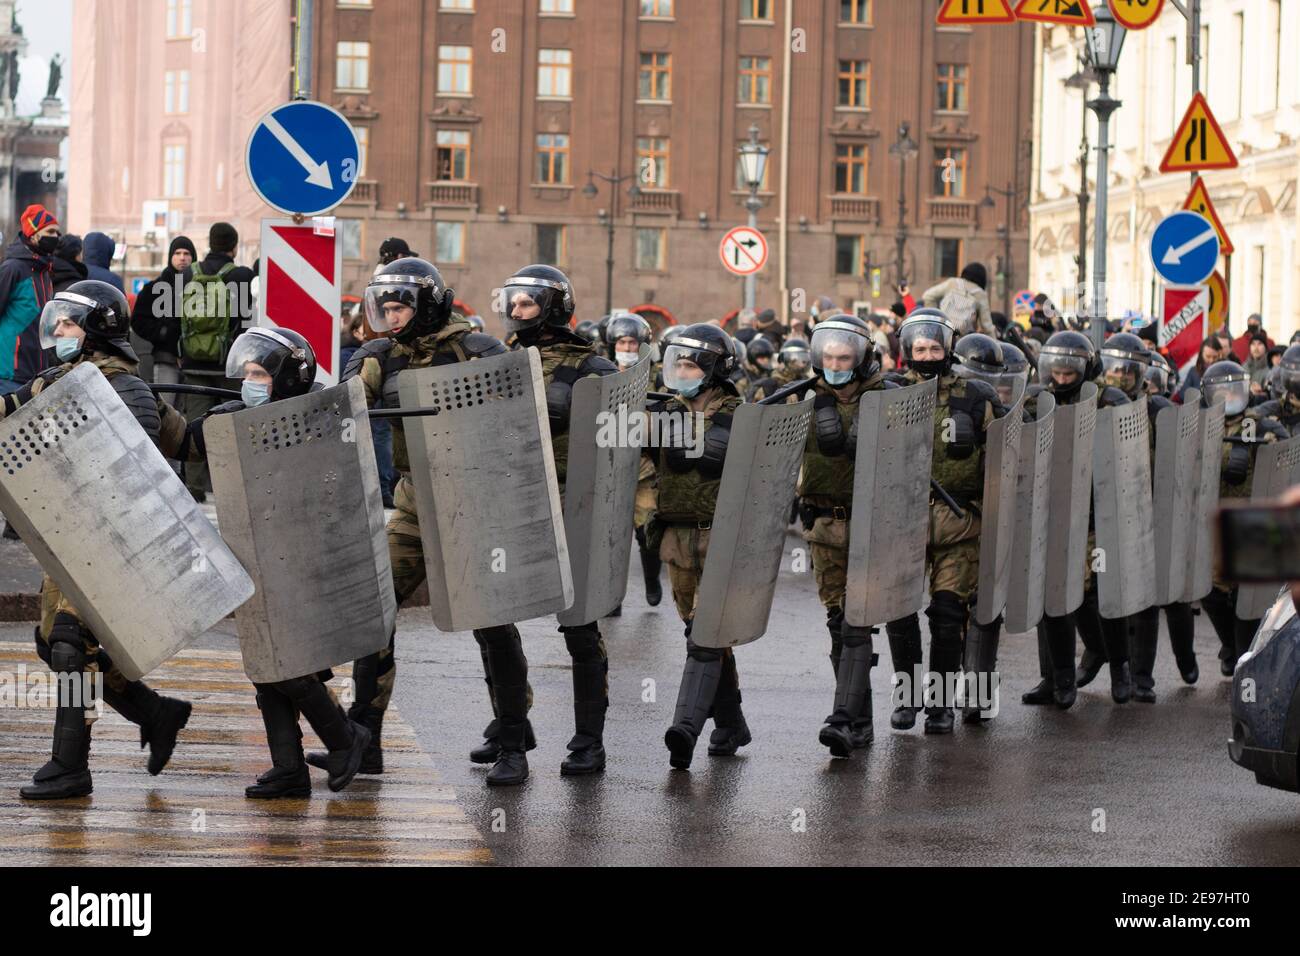 San Pietroburgo, Russia - 31 gennaio 2021: Gruppo di polizia o militare per strada, protesta in Russia, Editoriale illustrativo Foto Stock